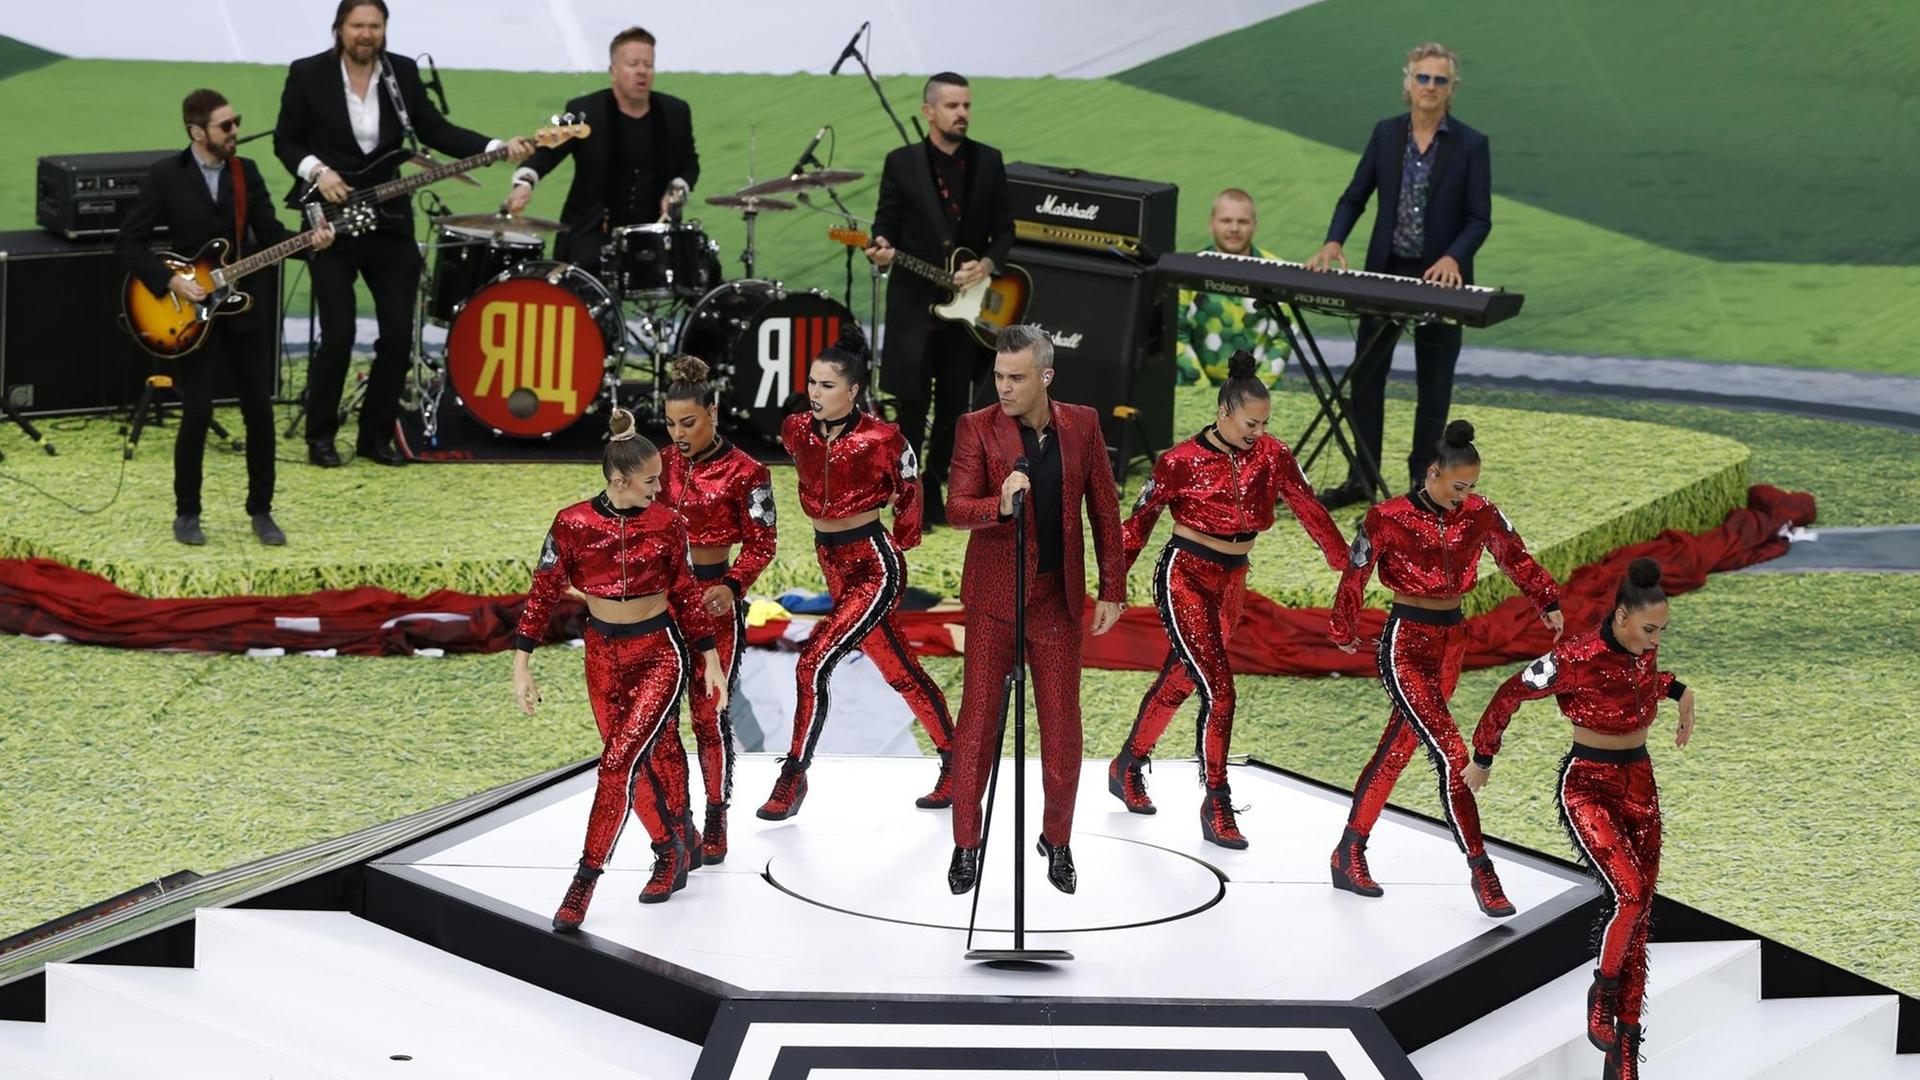 Vor dem ersten Spiel der Fußball-WM in Russland hat der britische Sänger Robbie Williams ein Medley seiner Hits präsentiert.